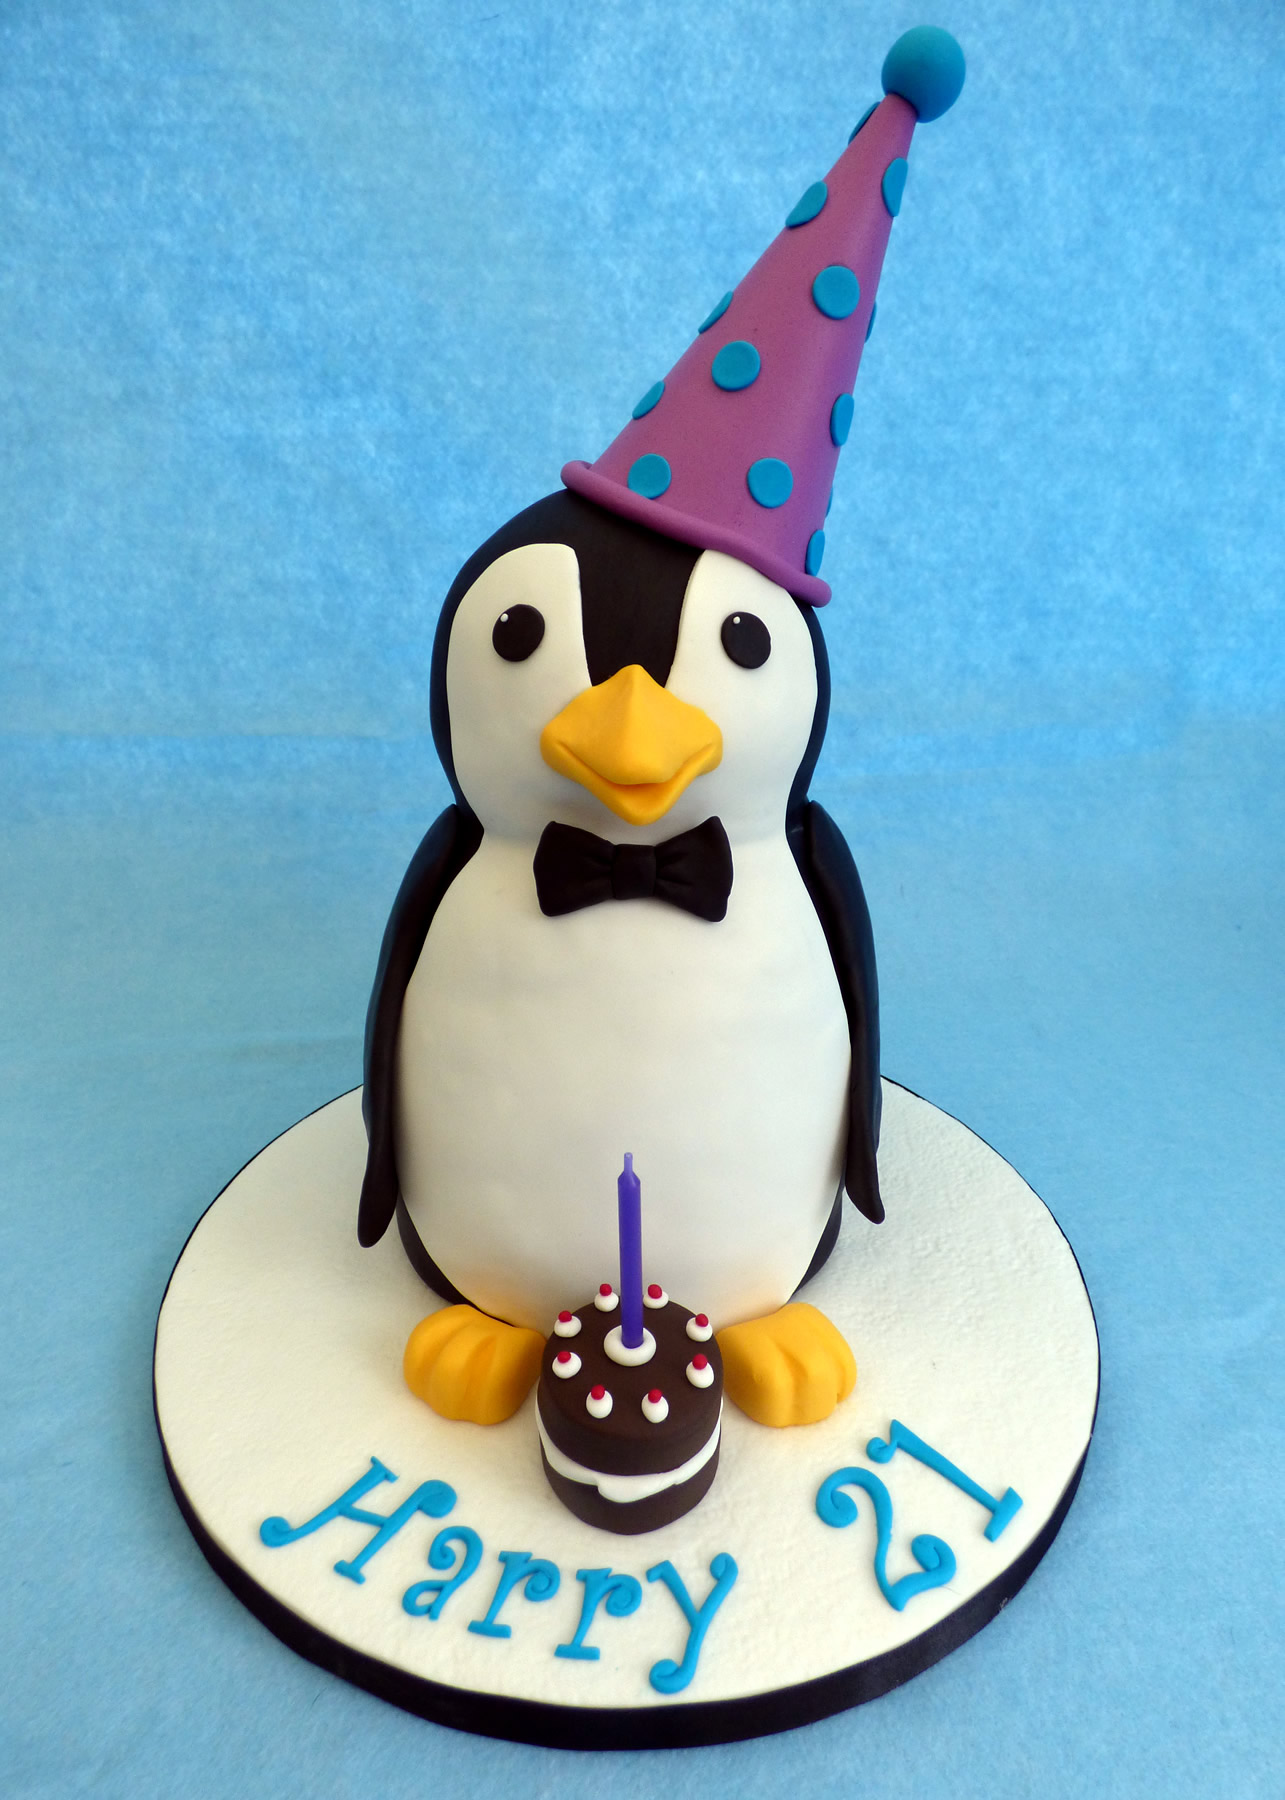 Penguin Cake Design Images (Penguin Birthday Cake Ideas) | Second birthday  cakes, Baby first birthday cake, Penguin cakes